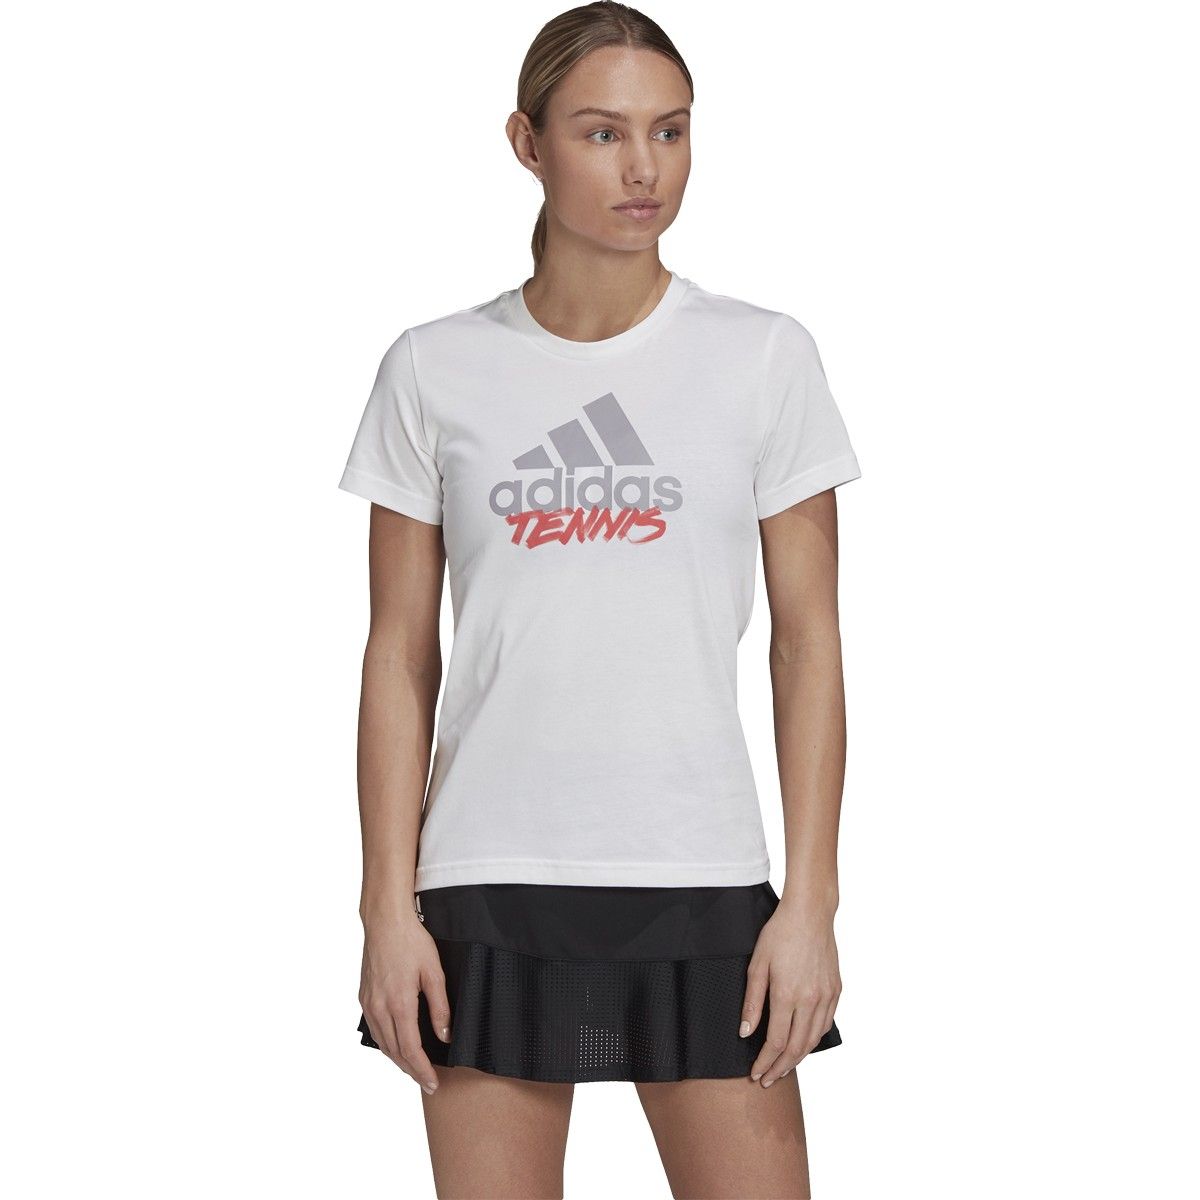 adidas tennis t shirt women's